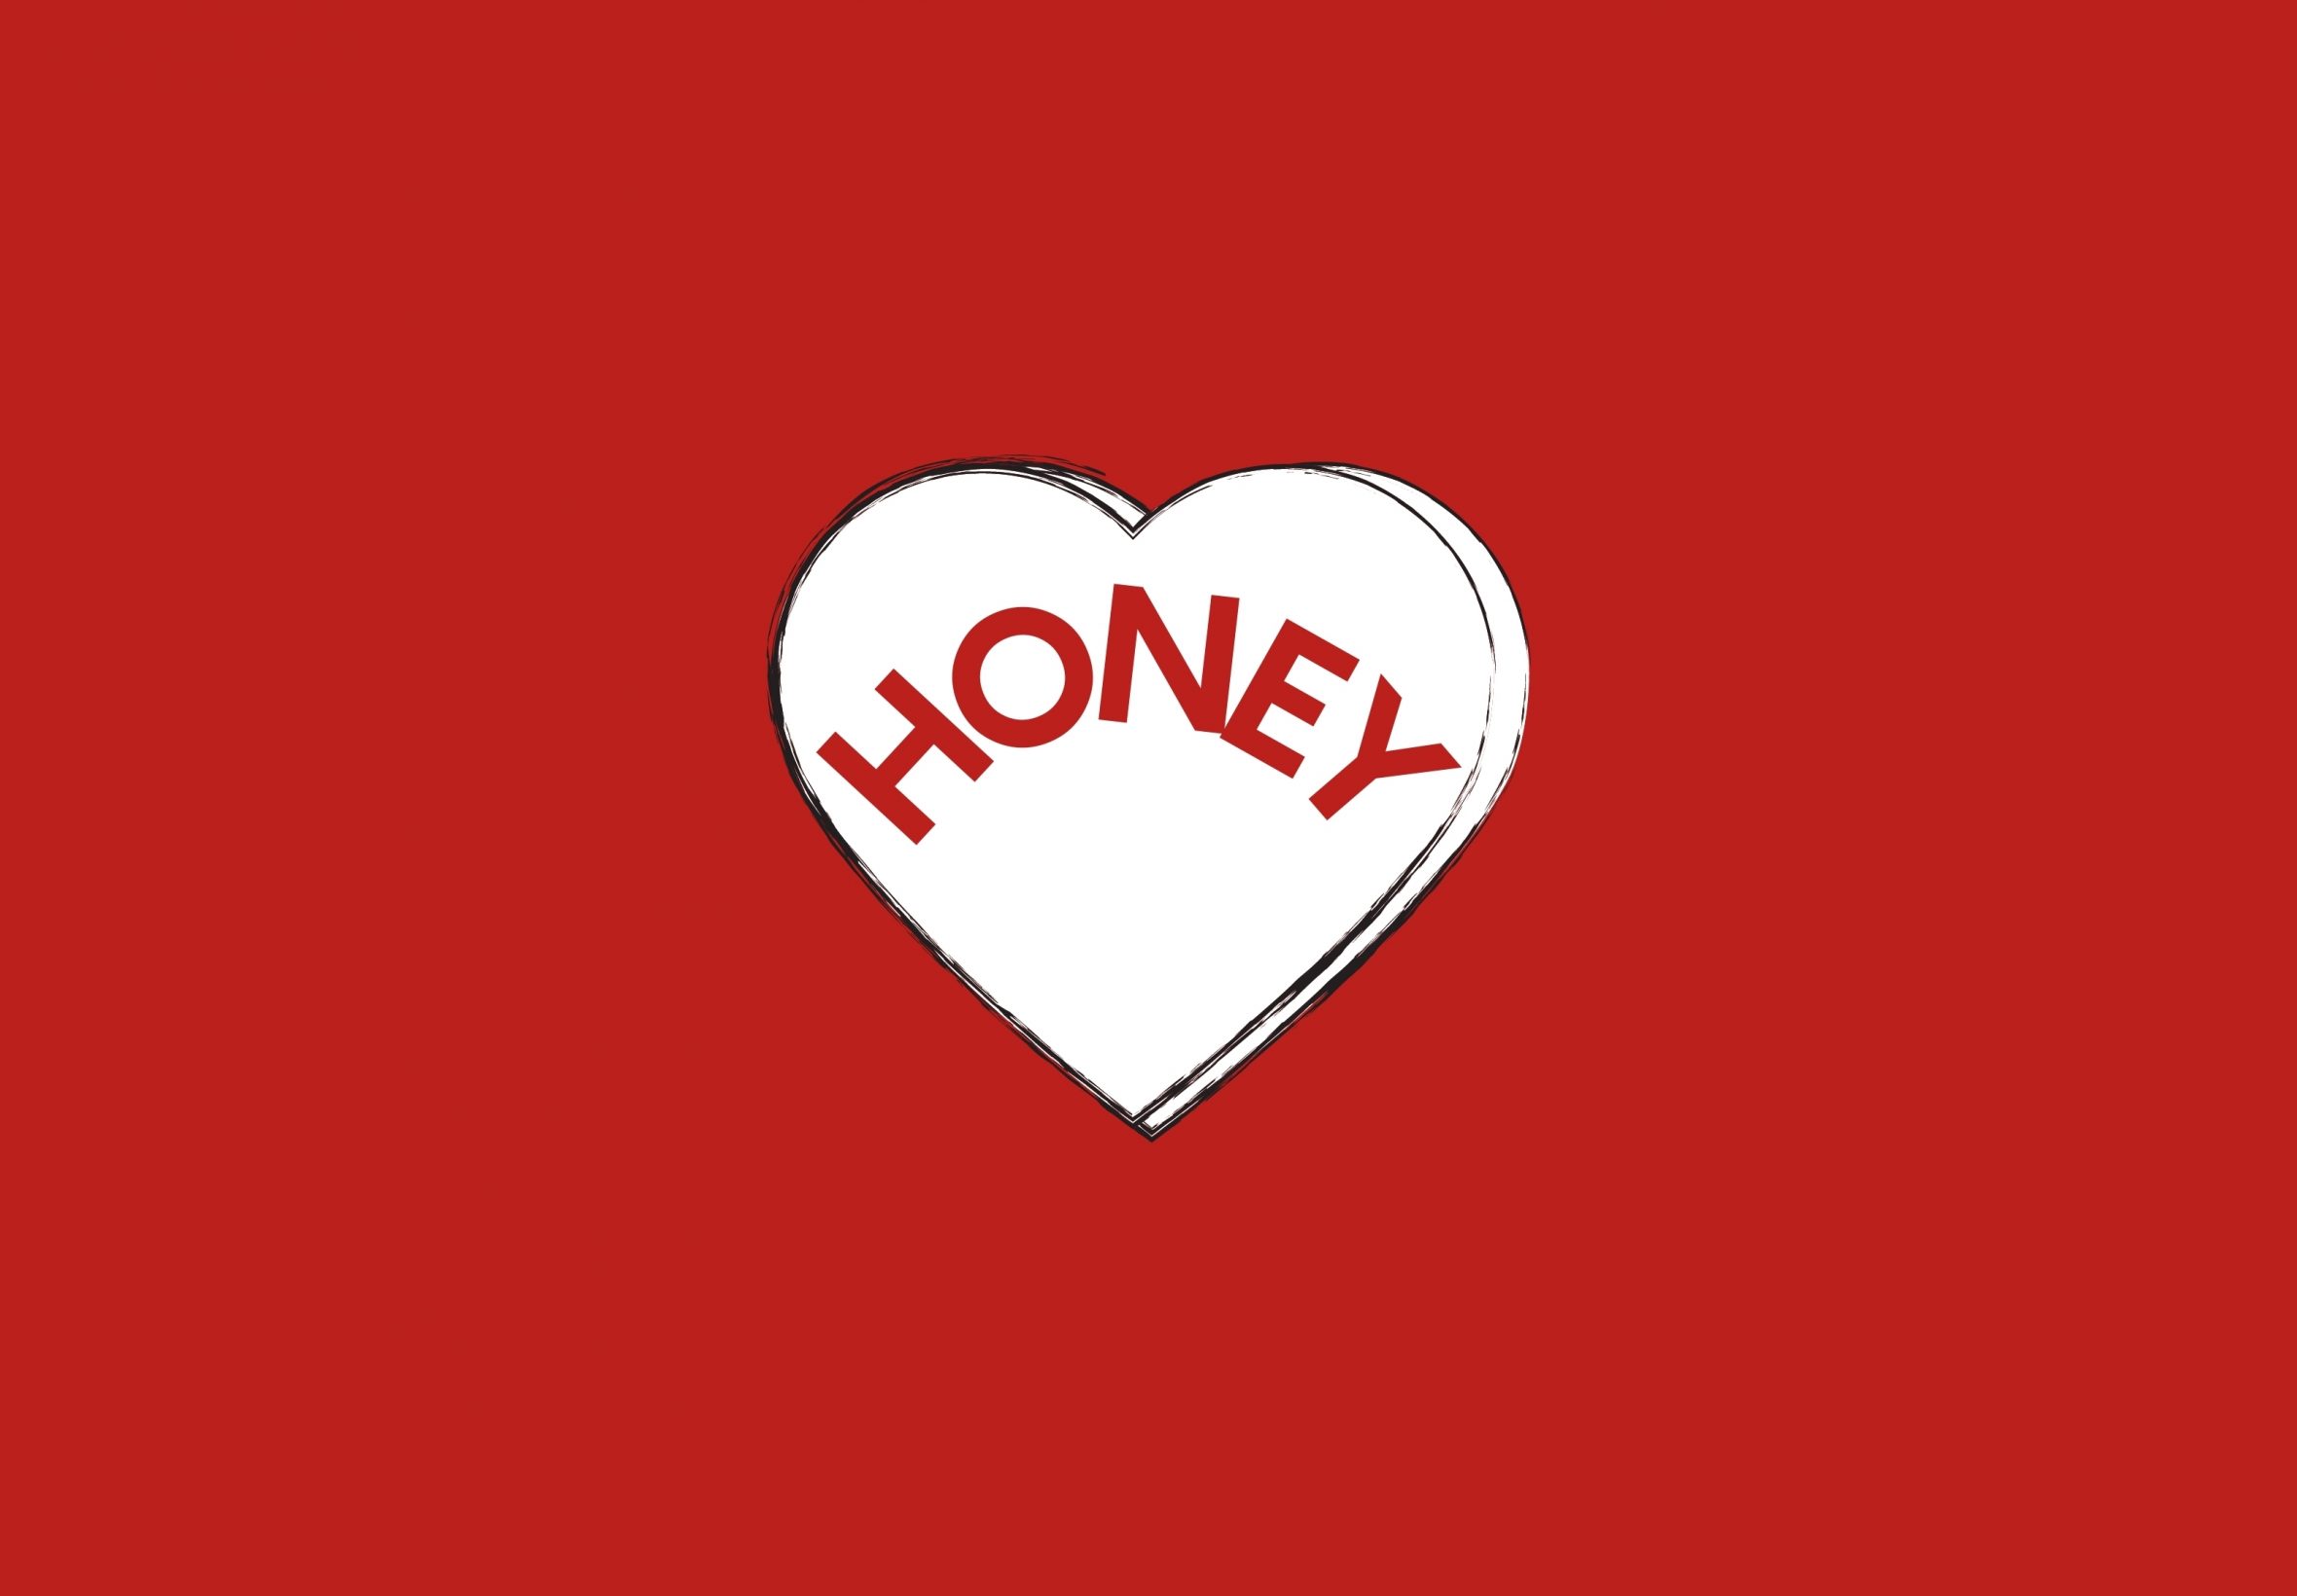 2360x1640 iPad Air wallpaper 4k Love Heart Honey Valentines Day iPad Wallpaper 2360x1640 pixels resolution